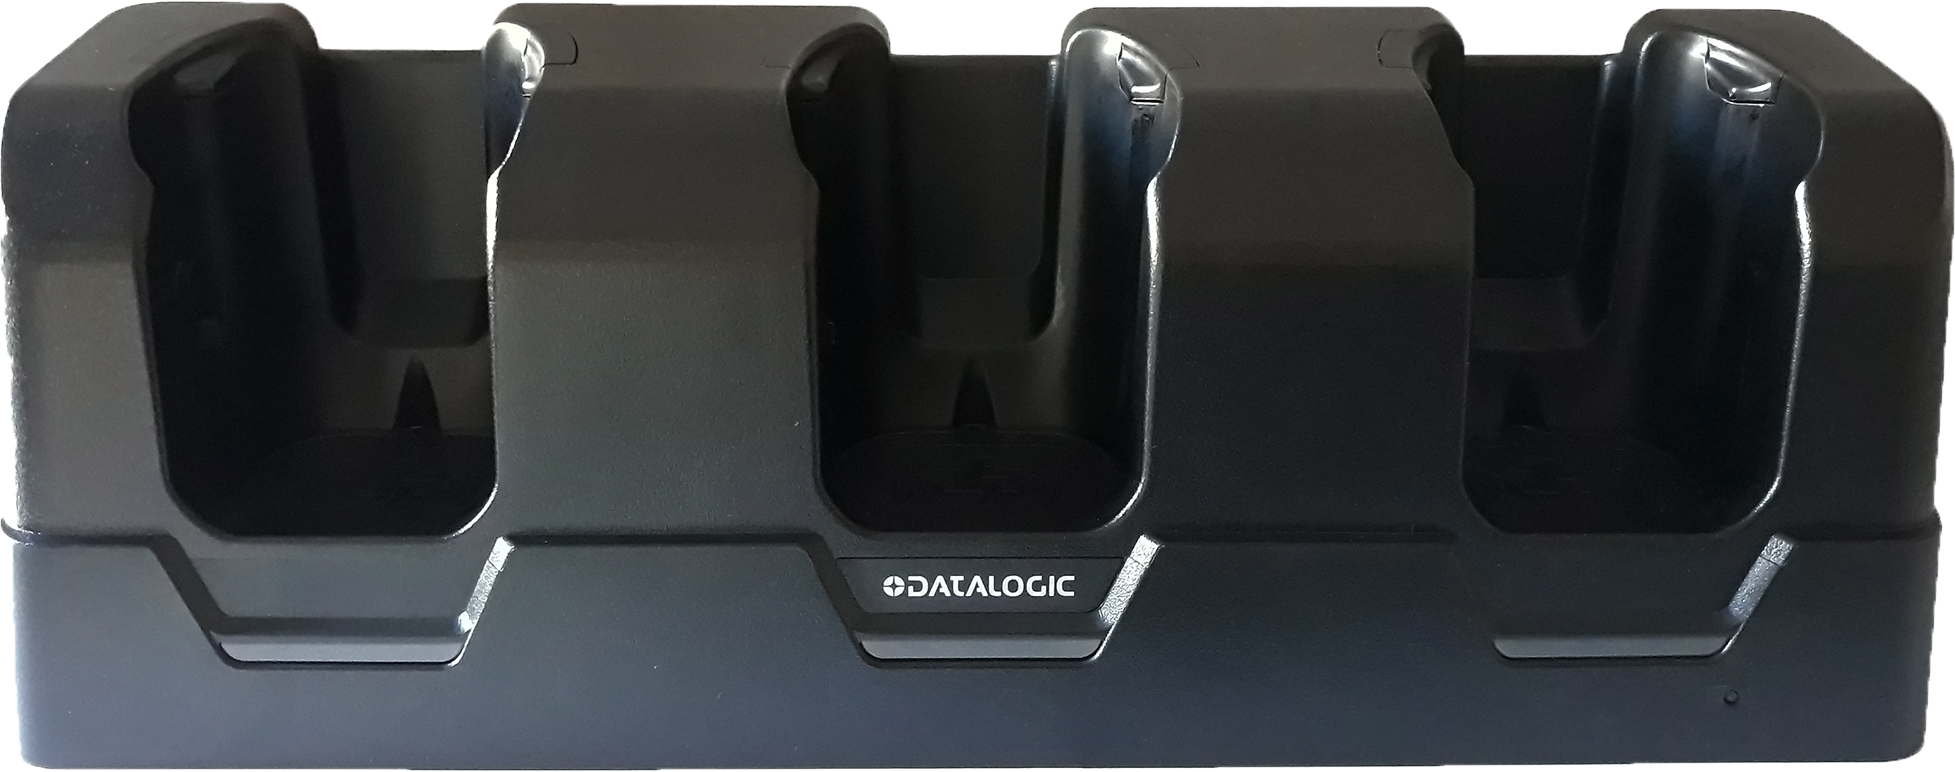 Datalogic Three Slot Wireless Charging Locking Dock mobildockningsstationer Mobil dator Svart